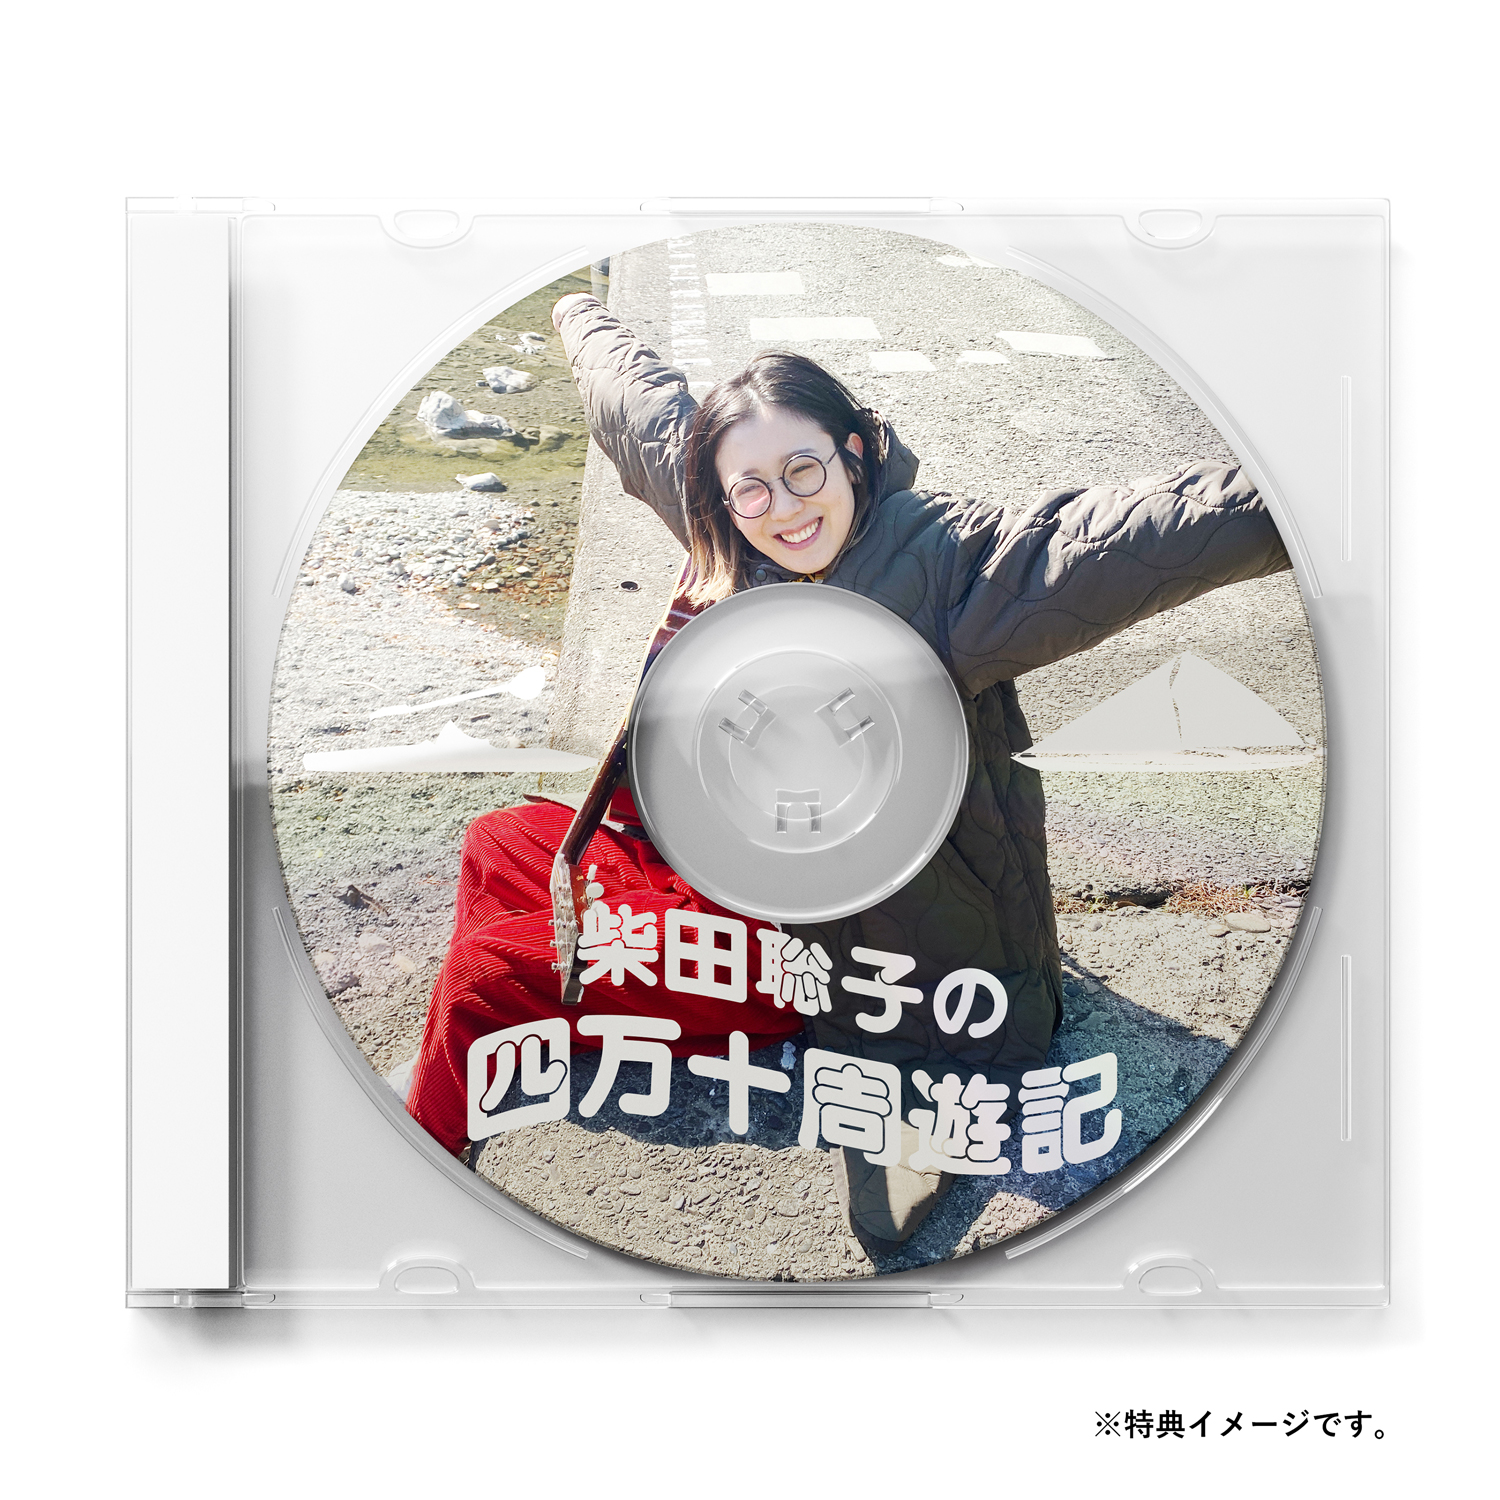 柴田聡子 'ぼちぼち銀河' 早期予約購入者特典 '柴田聡子の四万十周遊記' DVD